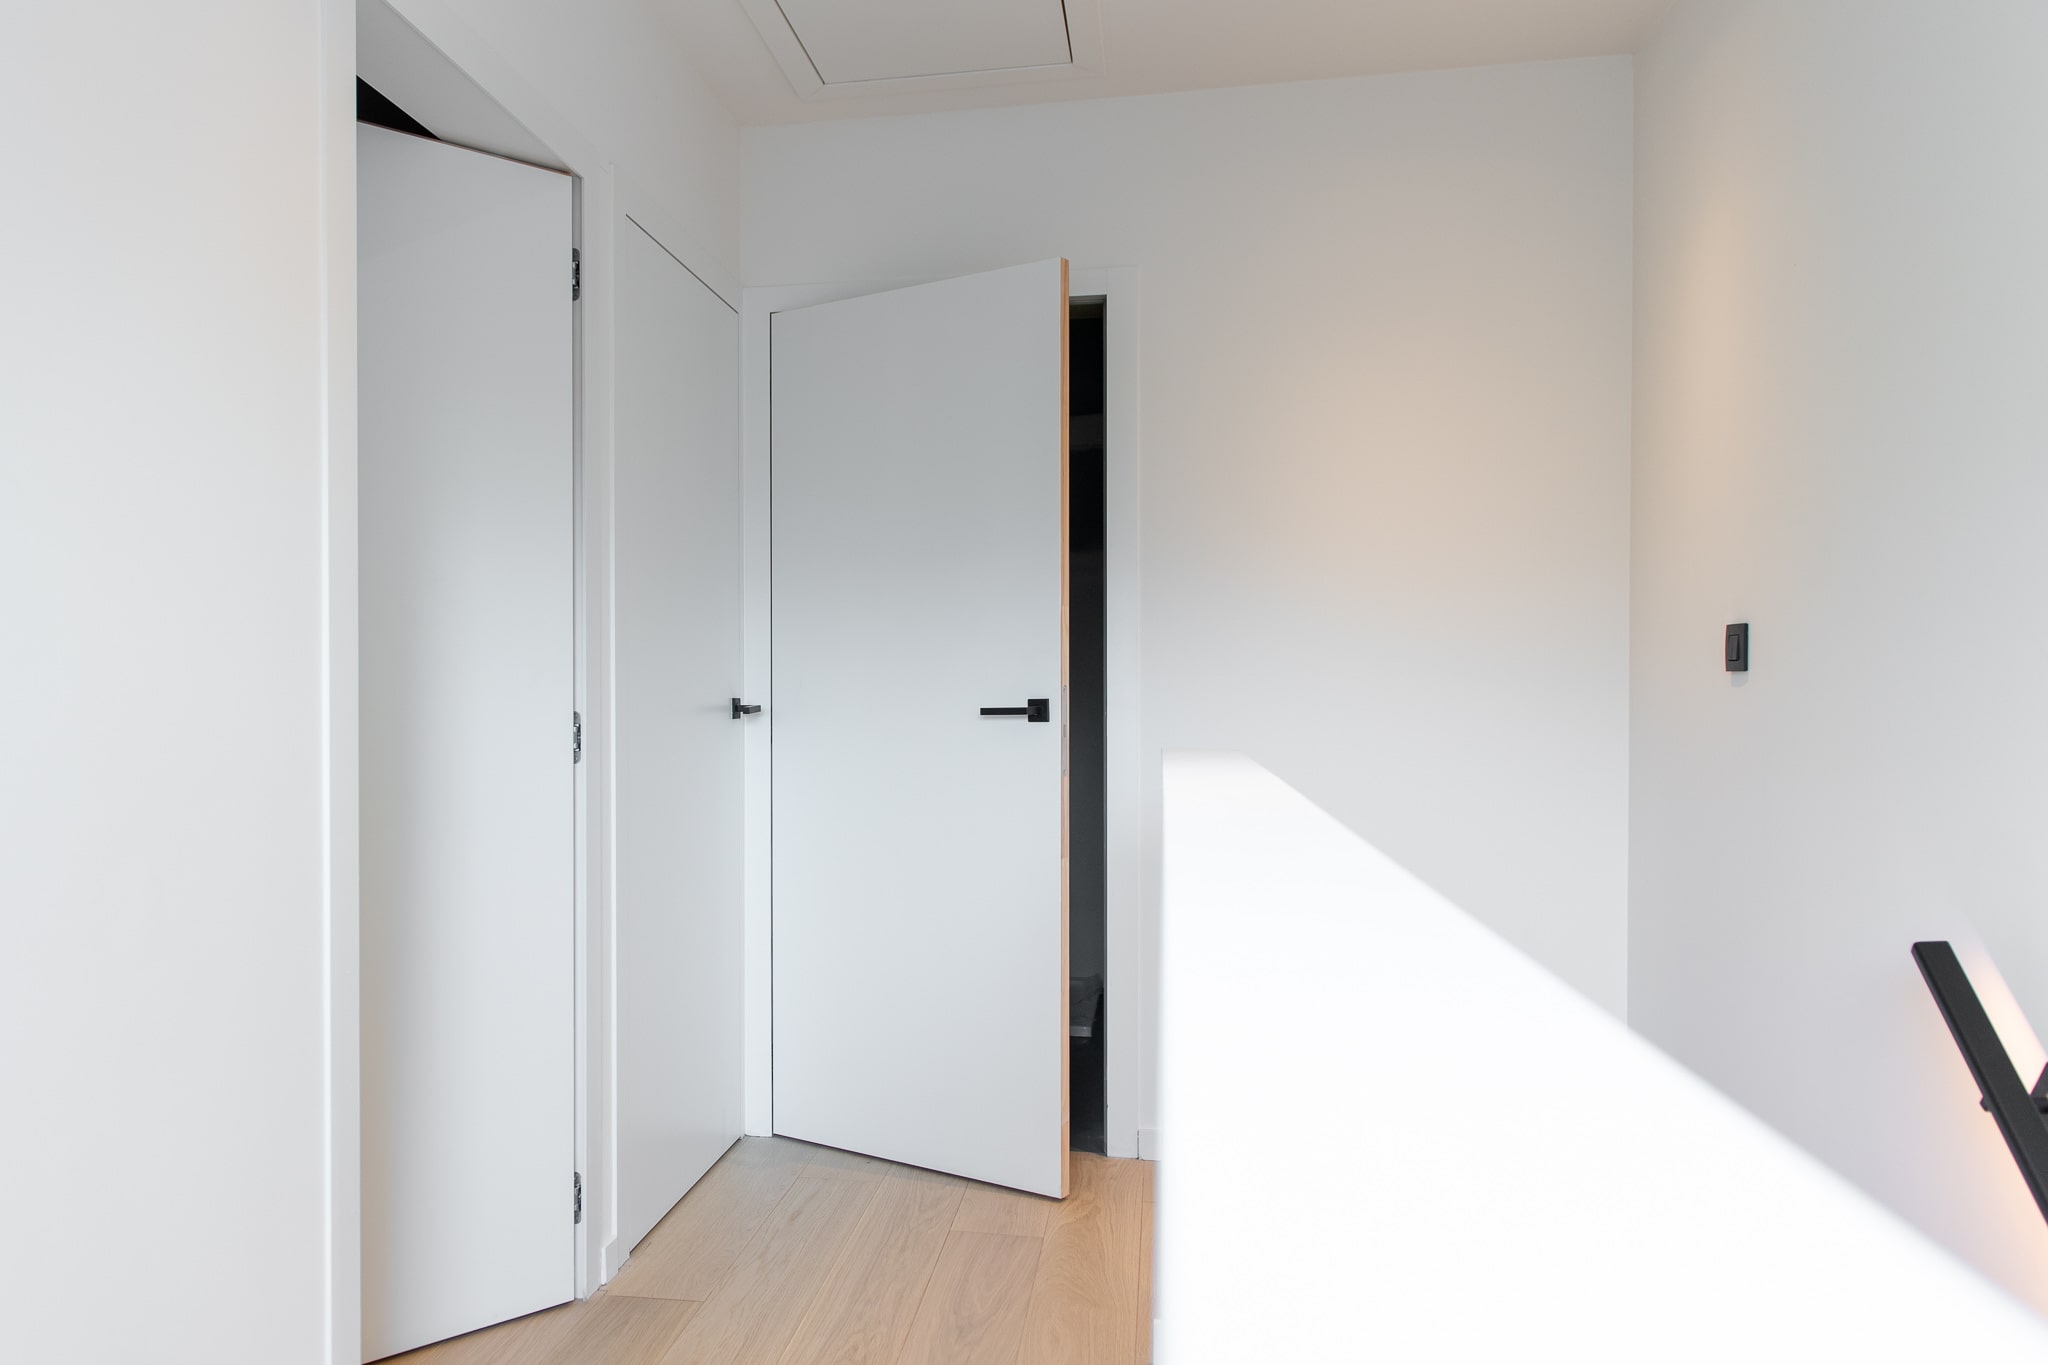 geduldig Ontdekking boog Moderne binnendeuren voor uw interieur | Decotrap